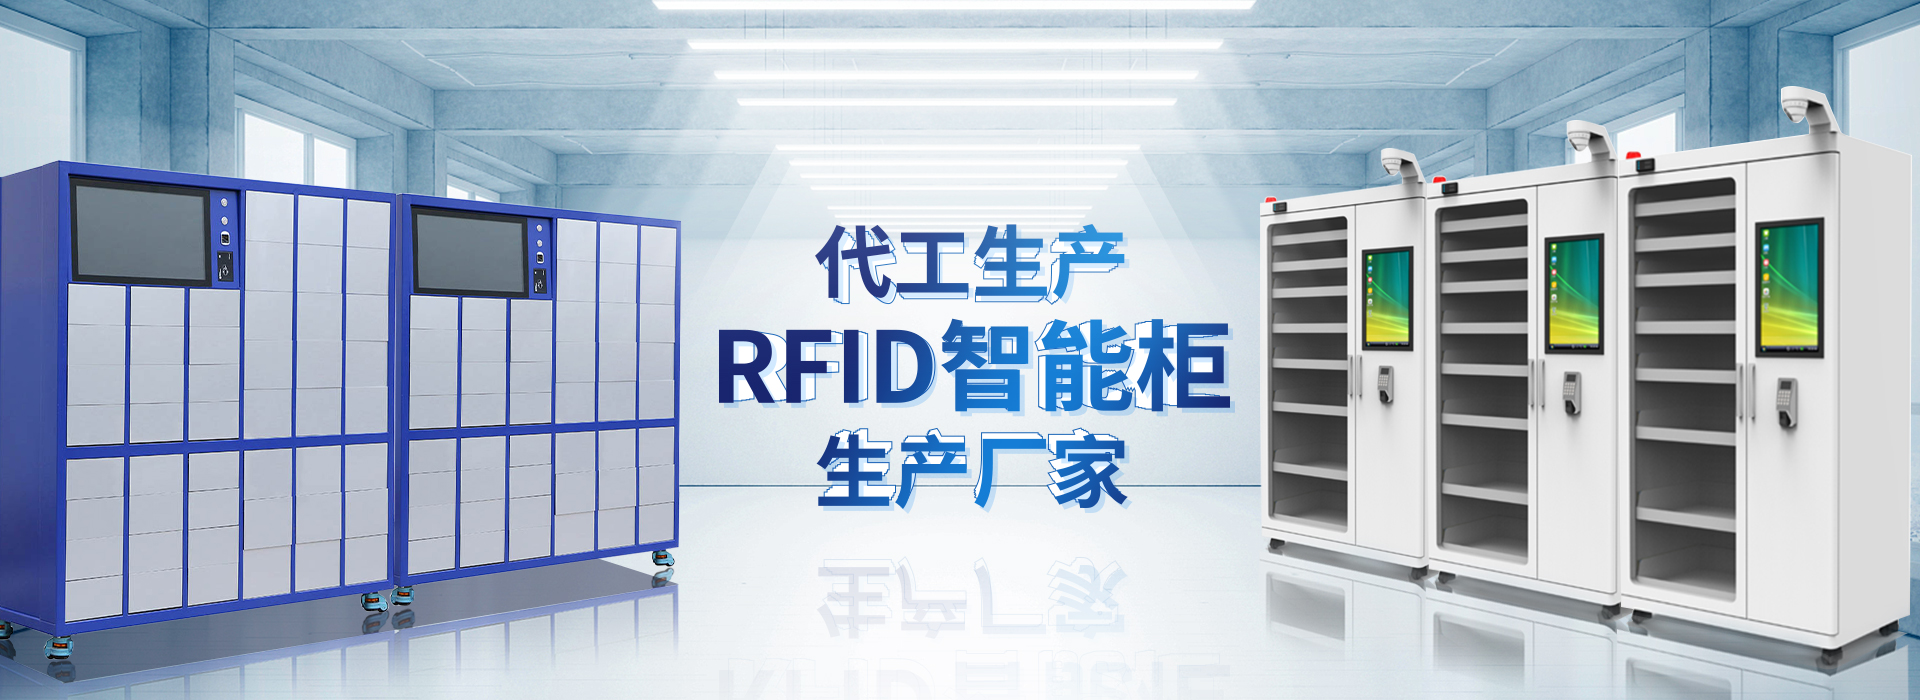 山东凤凰快3官网智能主营智能柜,RFID工具柜,智能称重柜等系列产品.